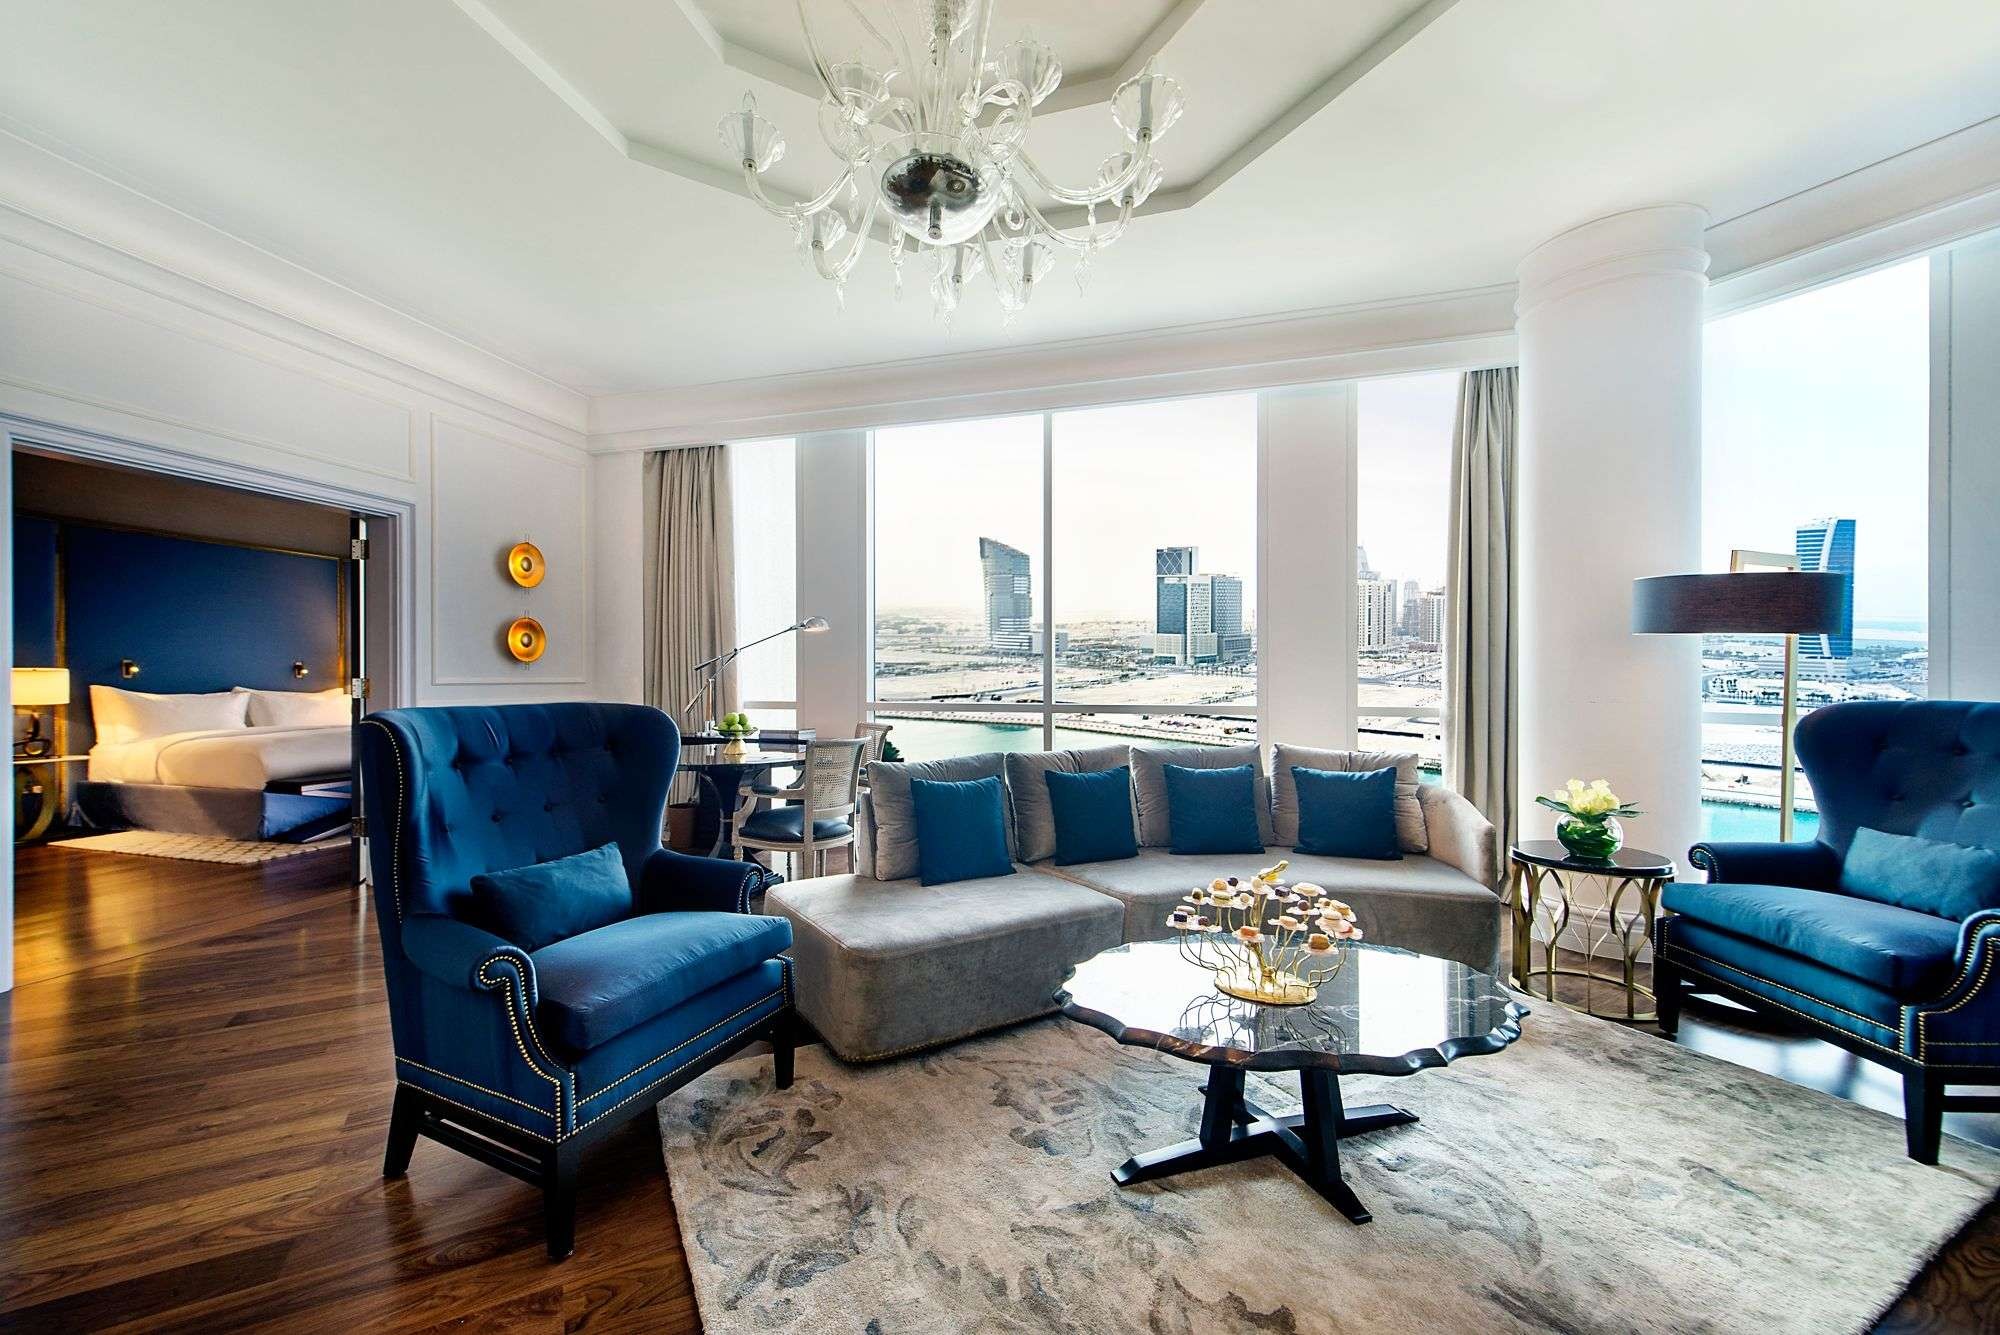 Executive Suite, The Ritz Carlton, Doha 5*